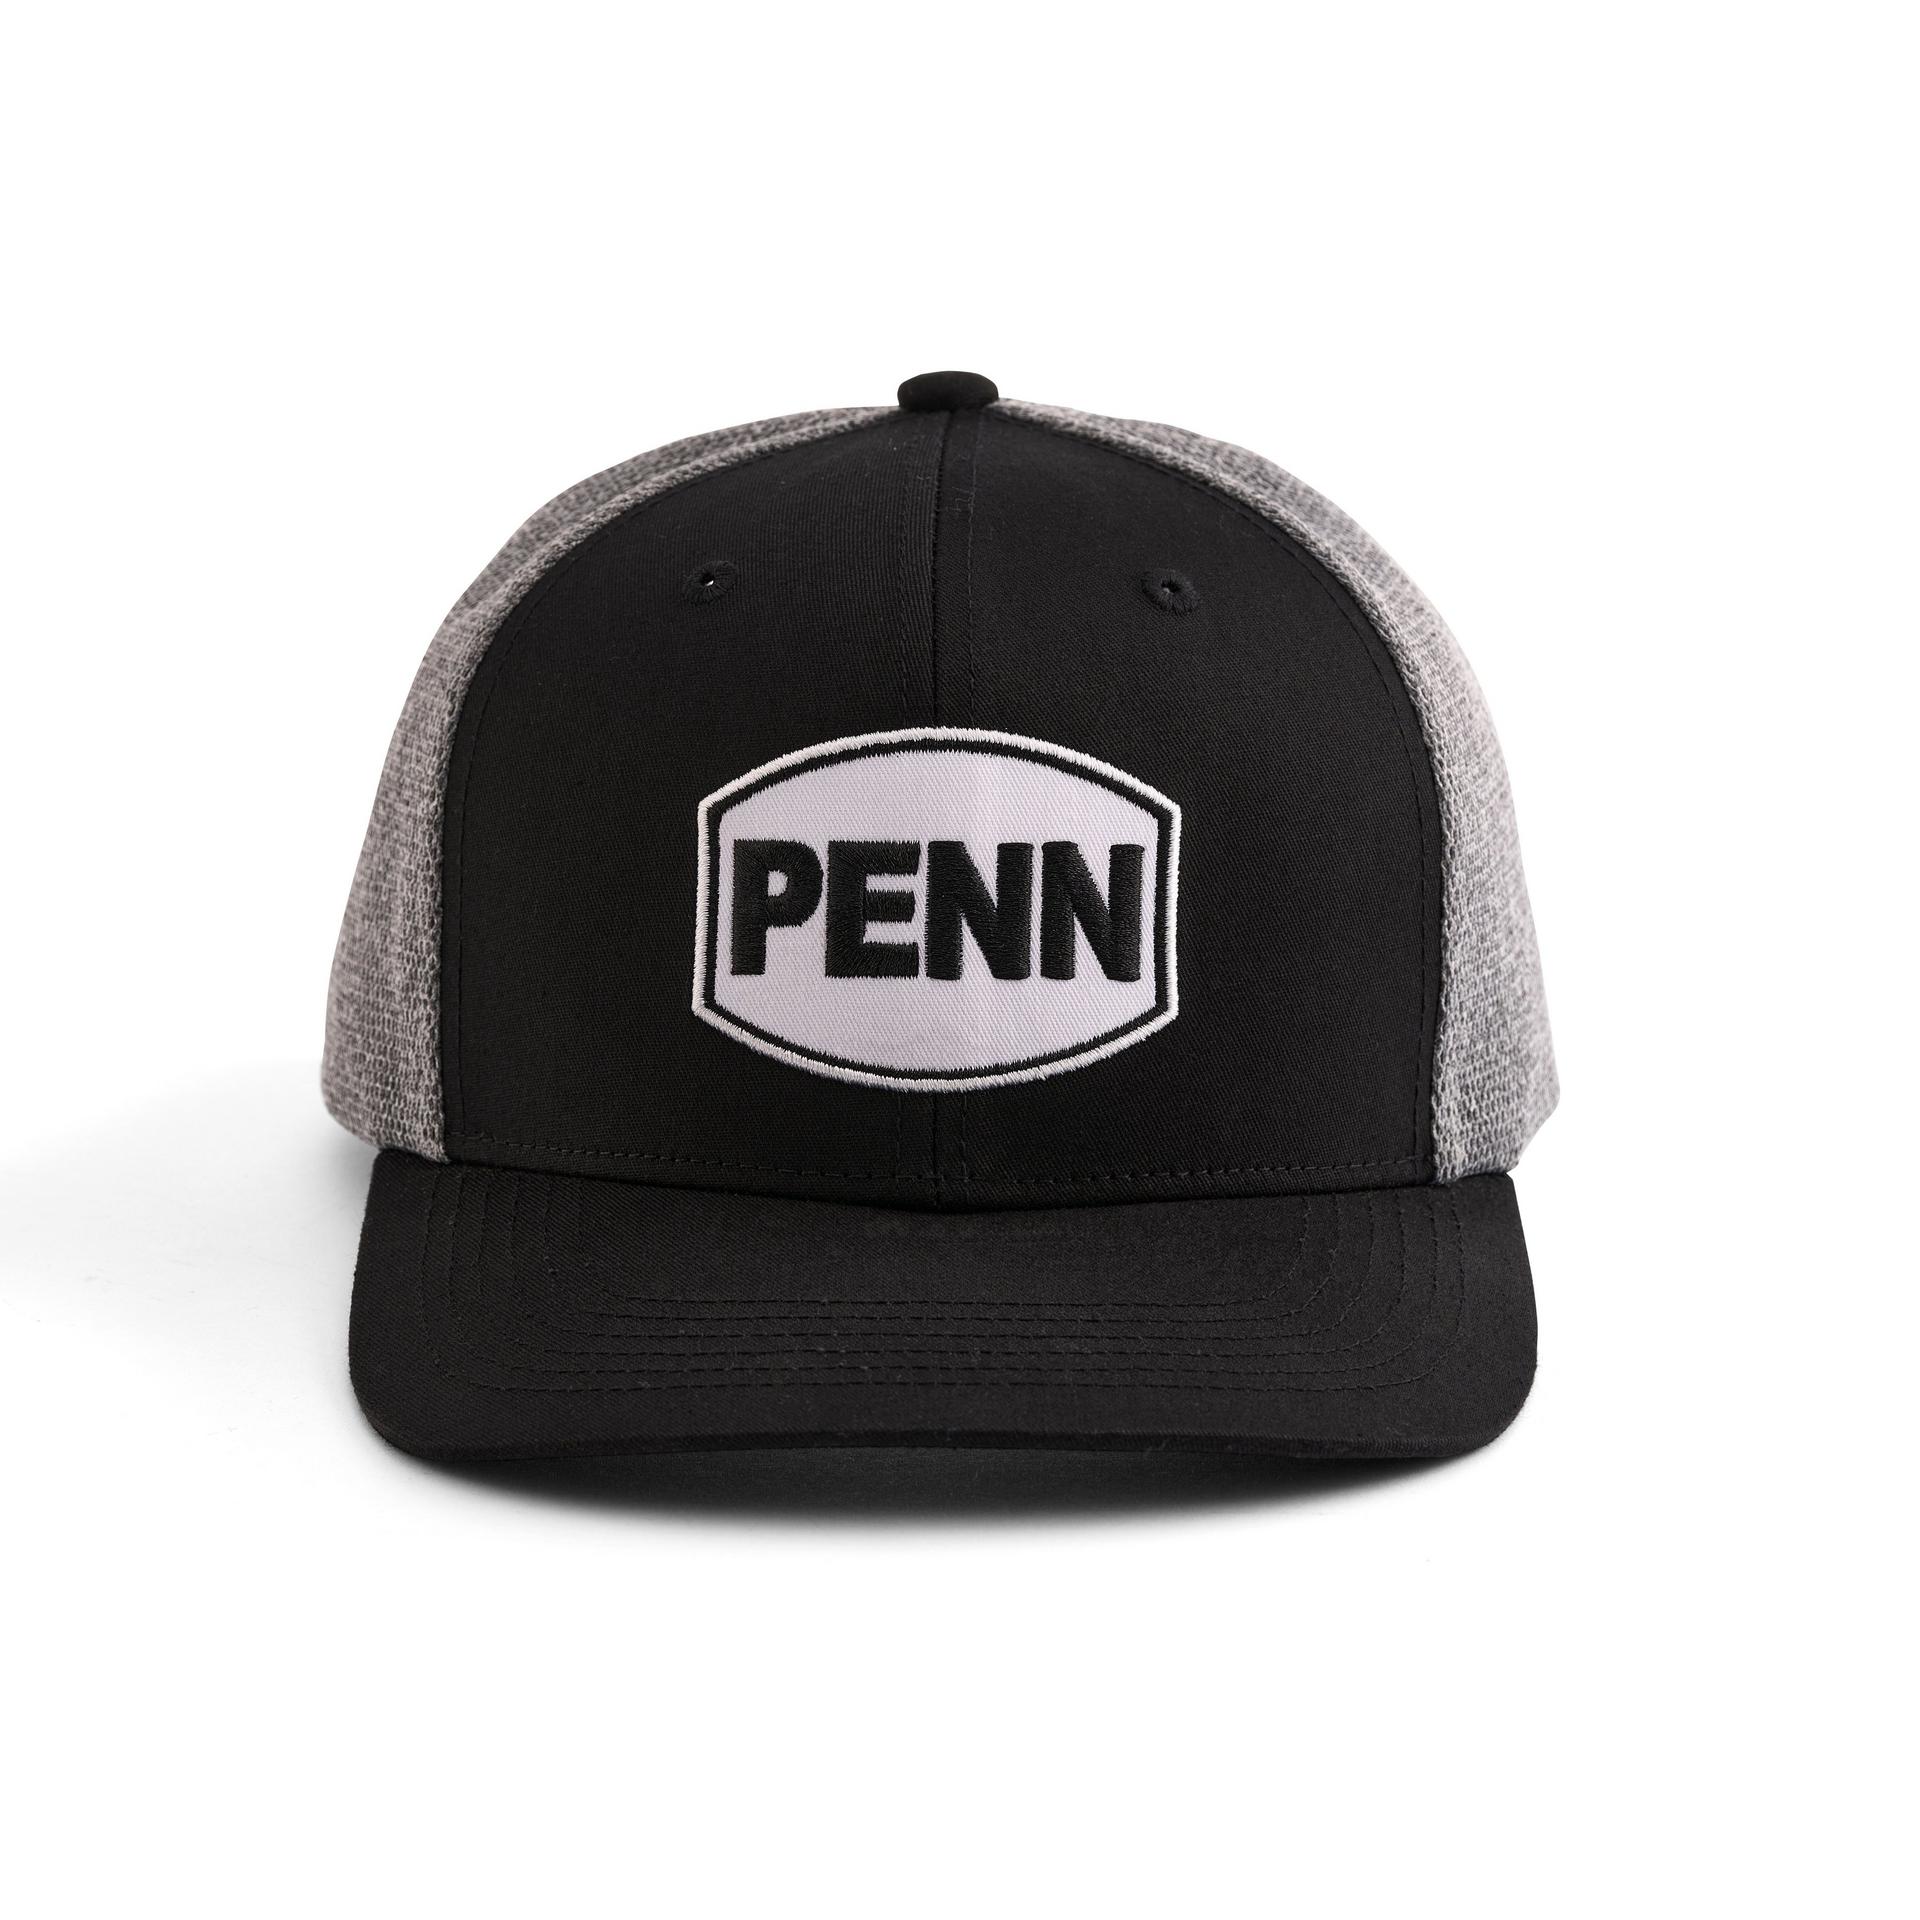 Penn Headwear - Hats & Visor Black Heather Grey Trucker Hat